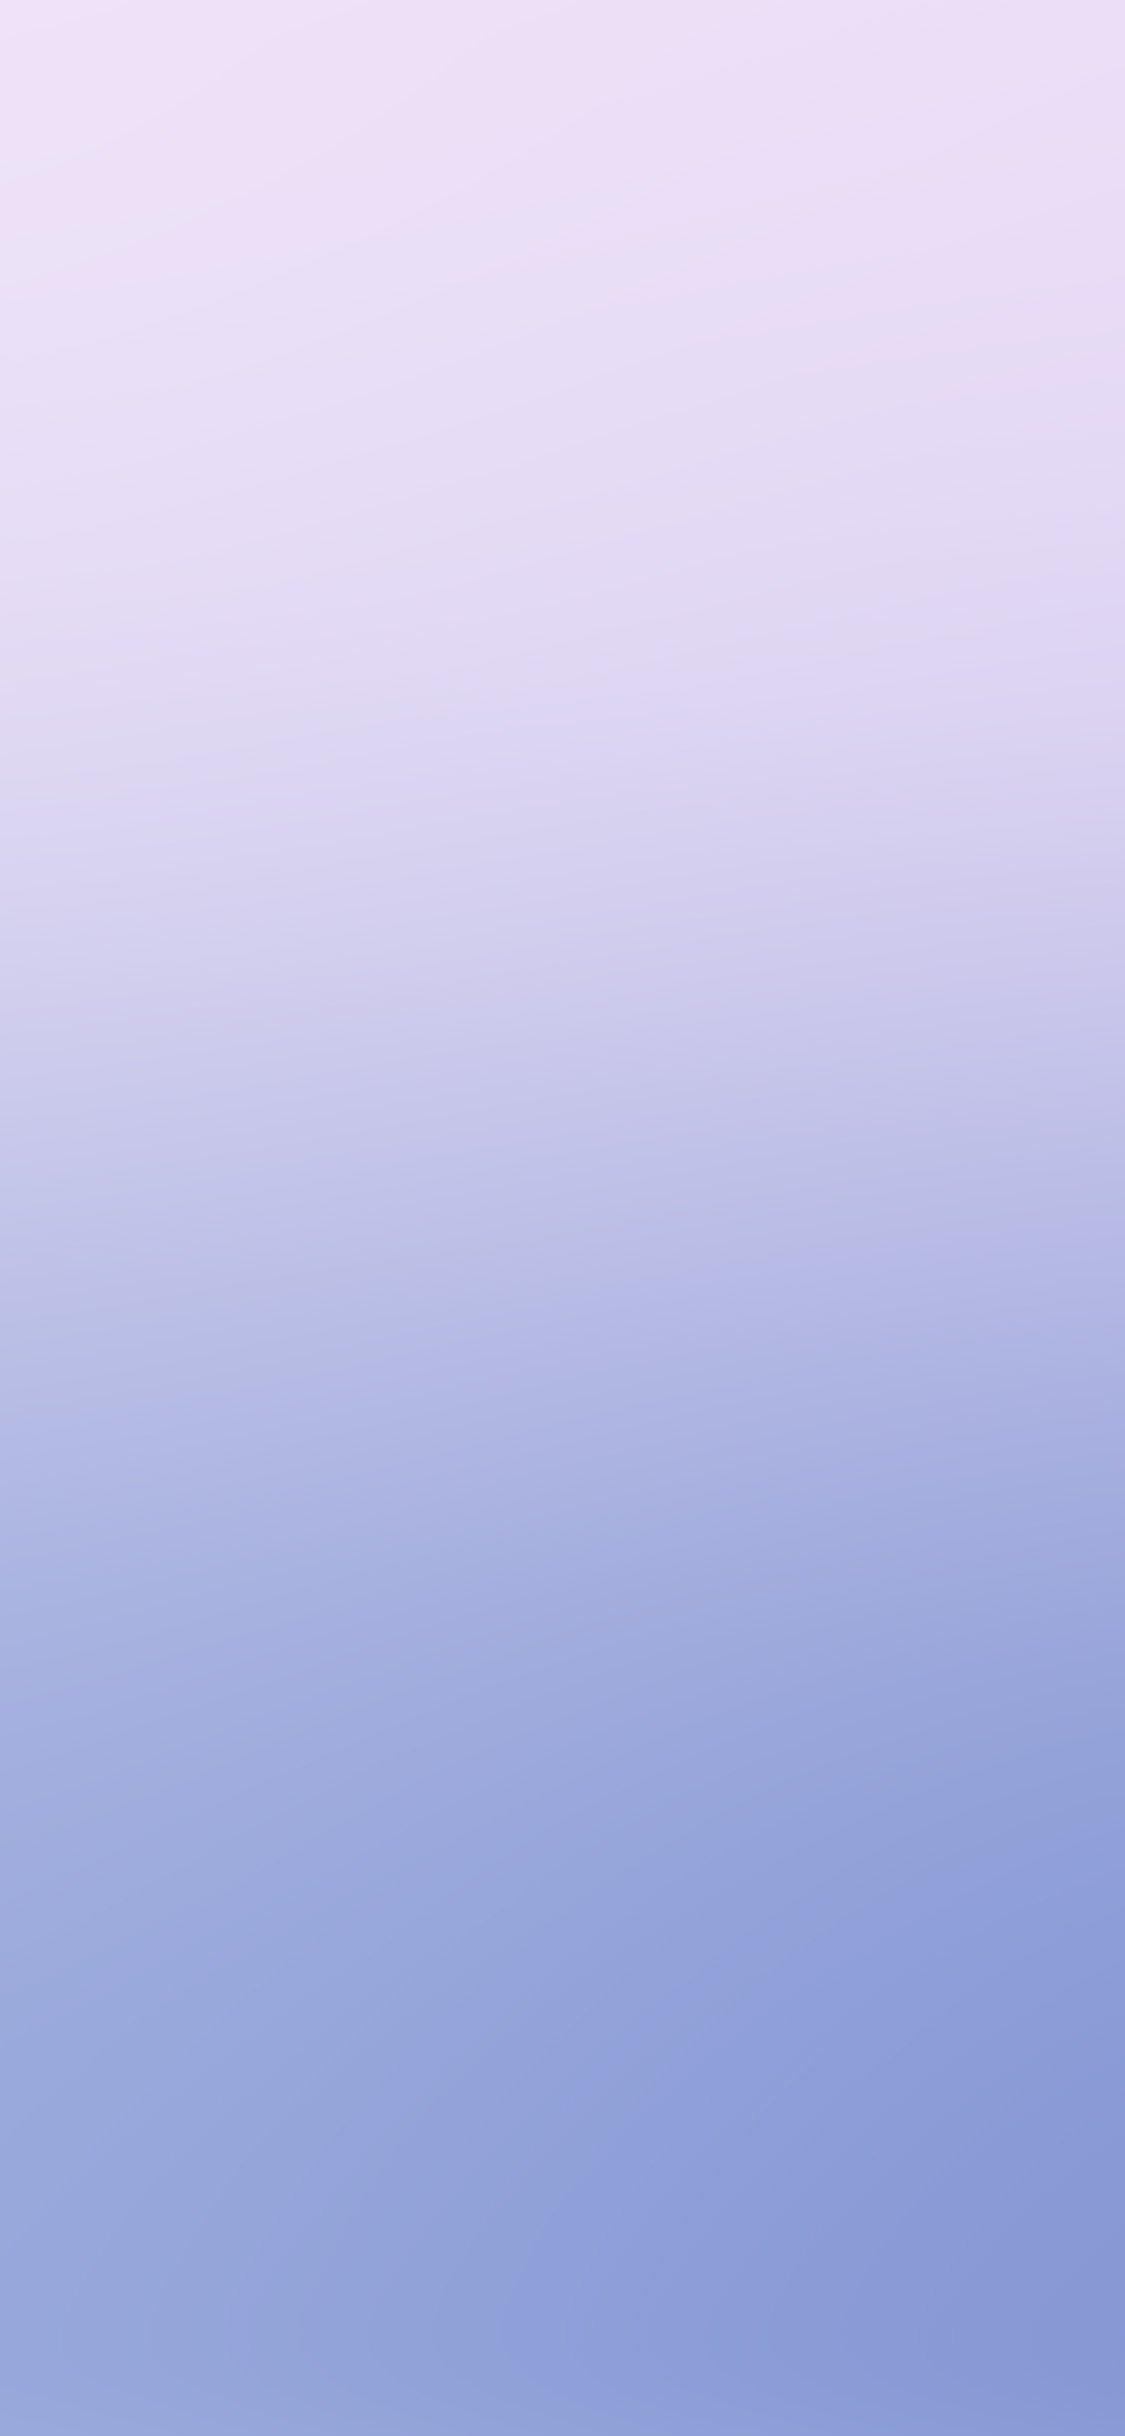 Hình nền iPhone X 1125x2436.  màu tím nhạt nhẹ nhàng